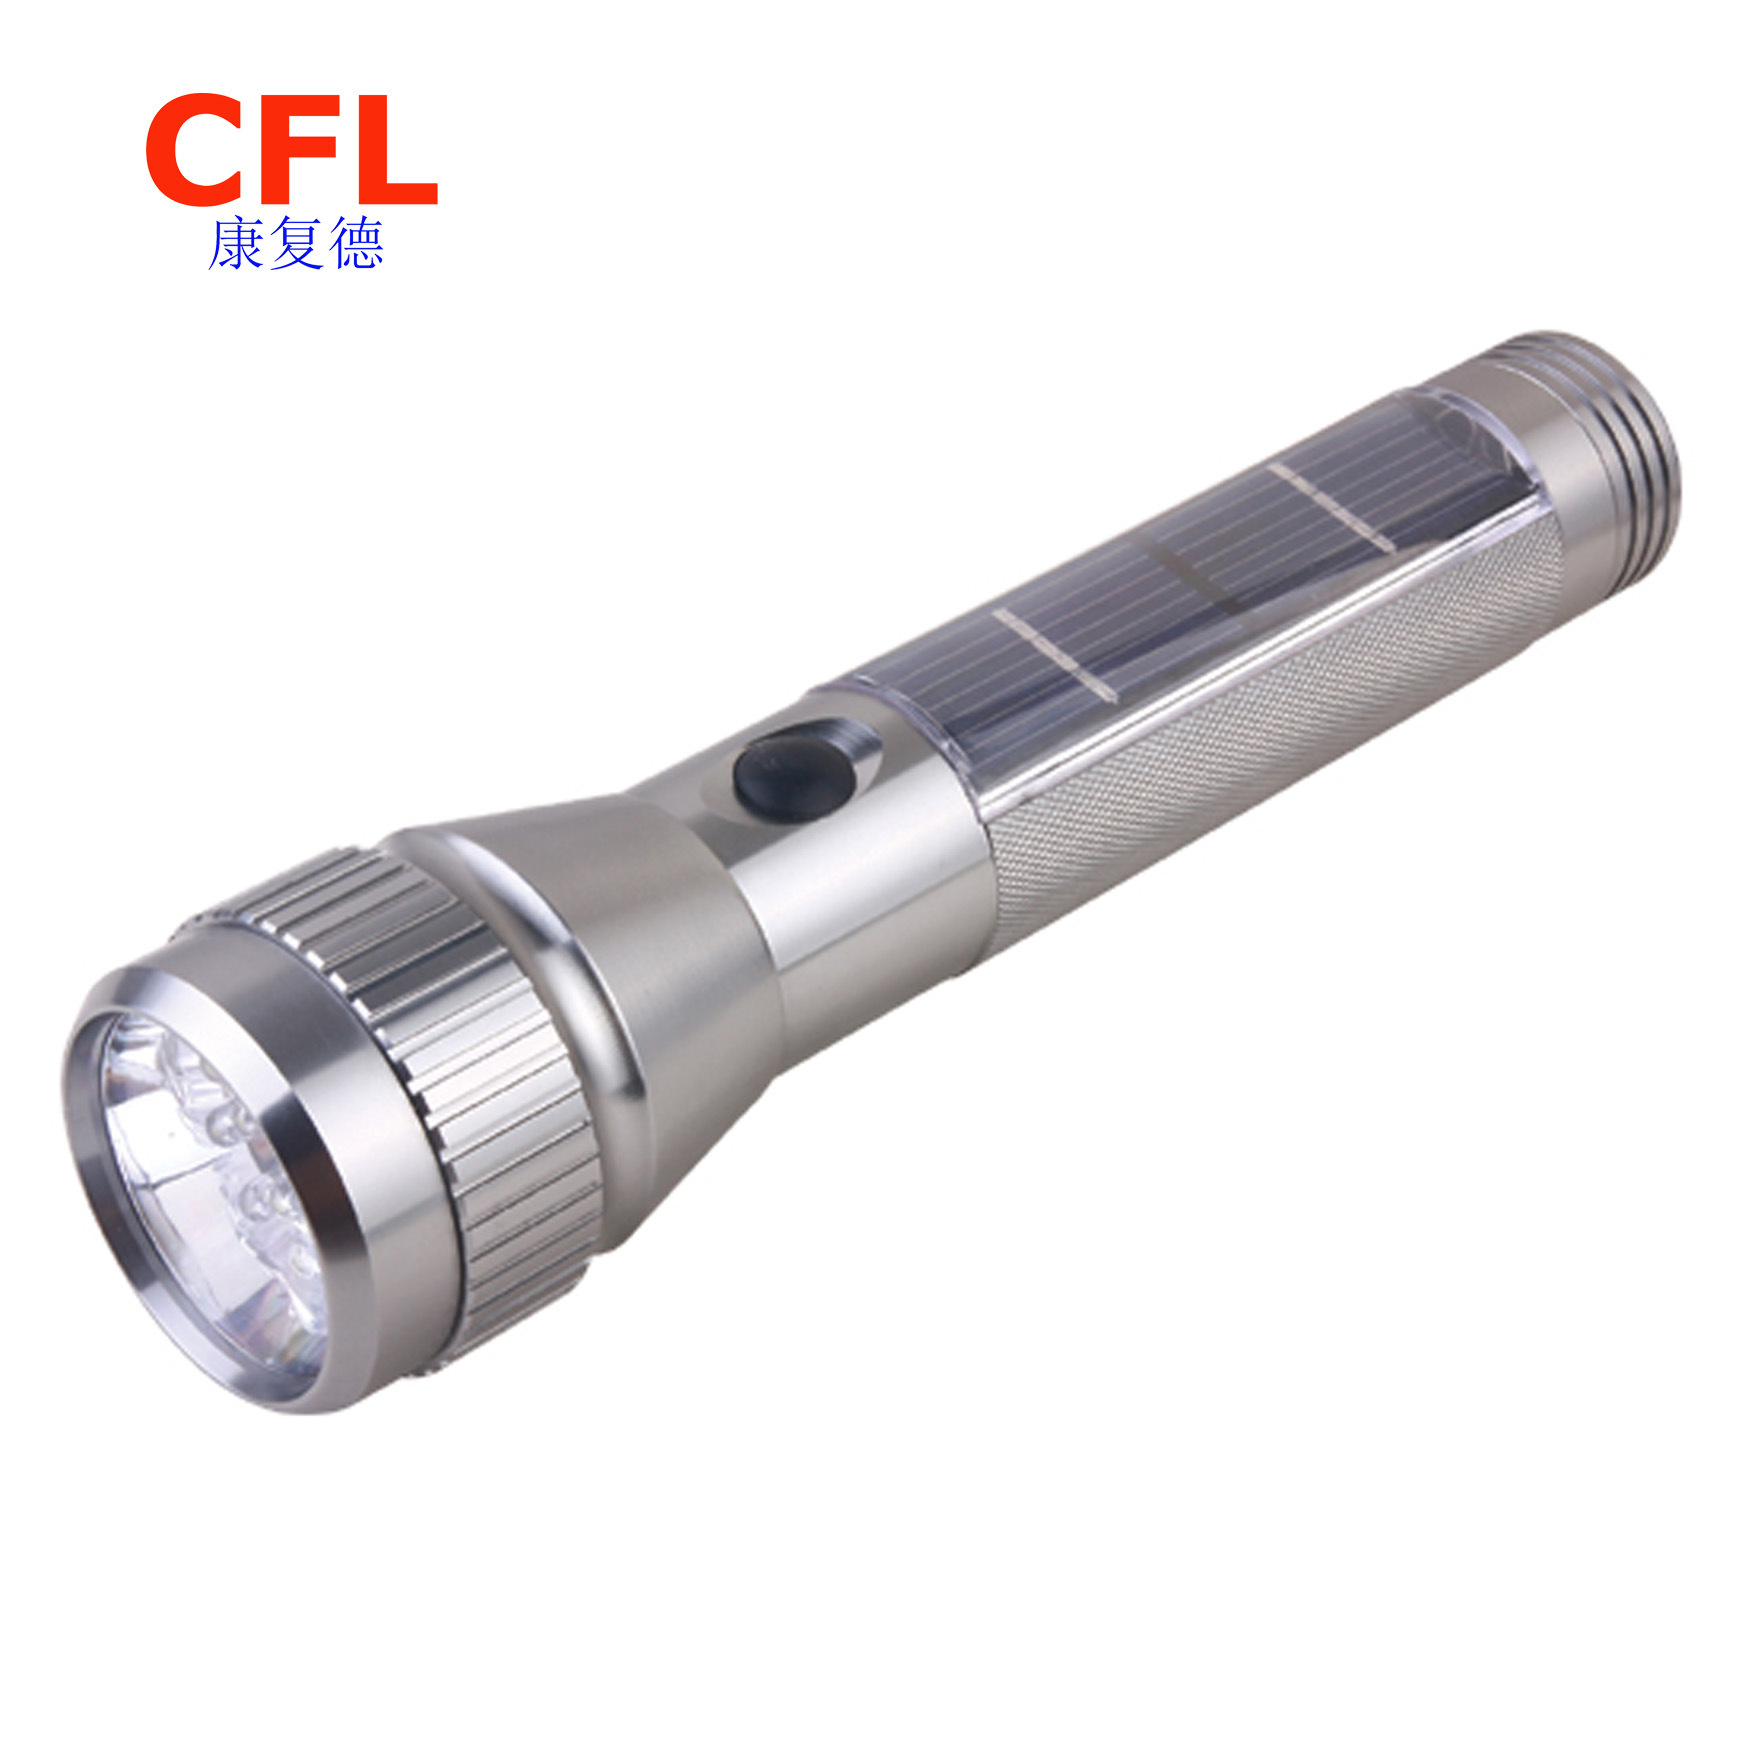 1W Al Solar LED Flashlight (CL-SFL-03)